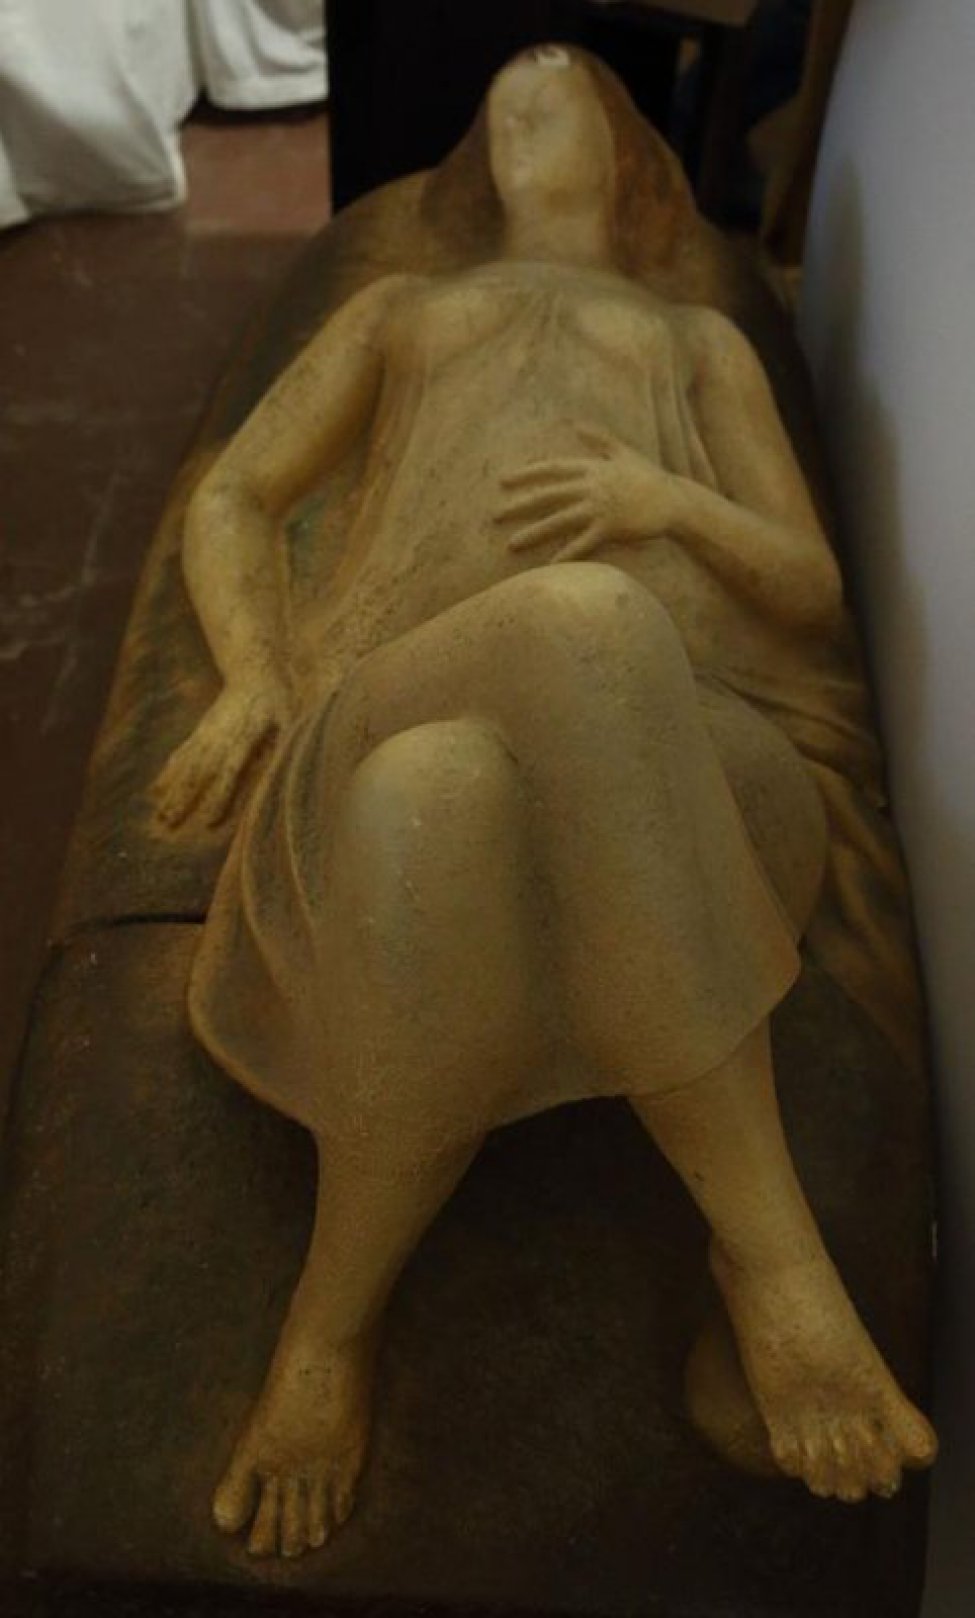 Изображена лежащая беременная женщина, правая рука лежит вдоль скульптуры, левая - на животе. Ноги согнуты в коленях, правая нога закинута на левую.